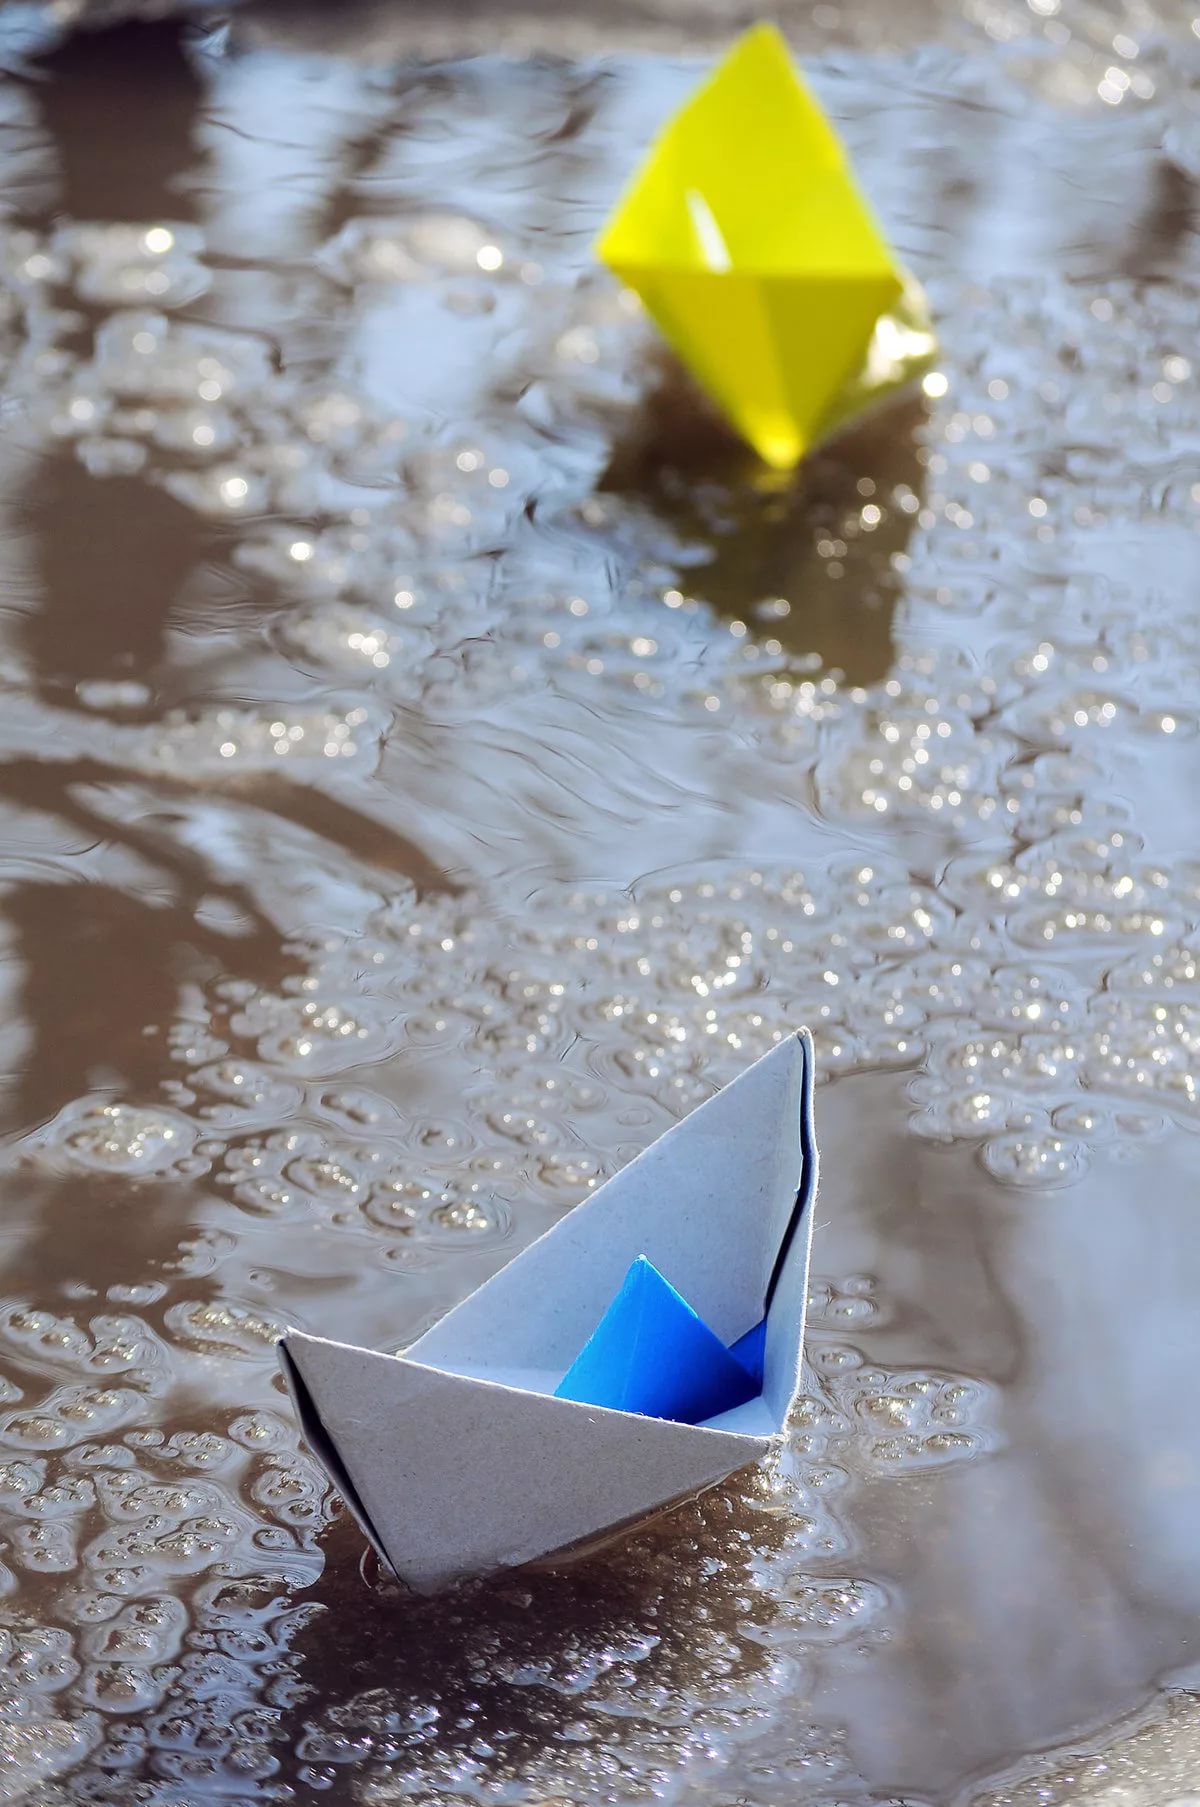 Кораблик из бумаги я по ручью пустил. Бумажный кораблик. Бумажный корабль. Бумажный кораблик в ручейке. Кораблик в ручейке.